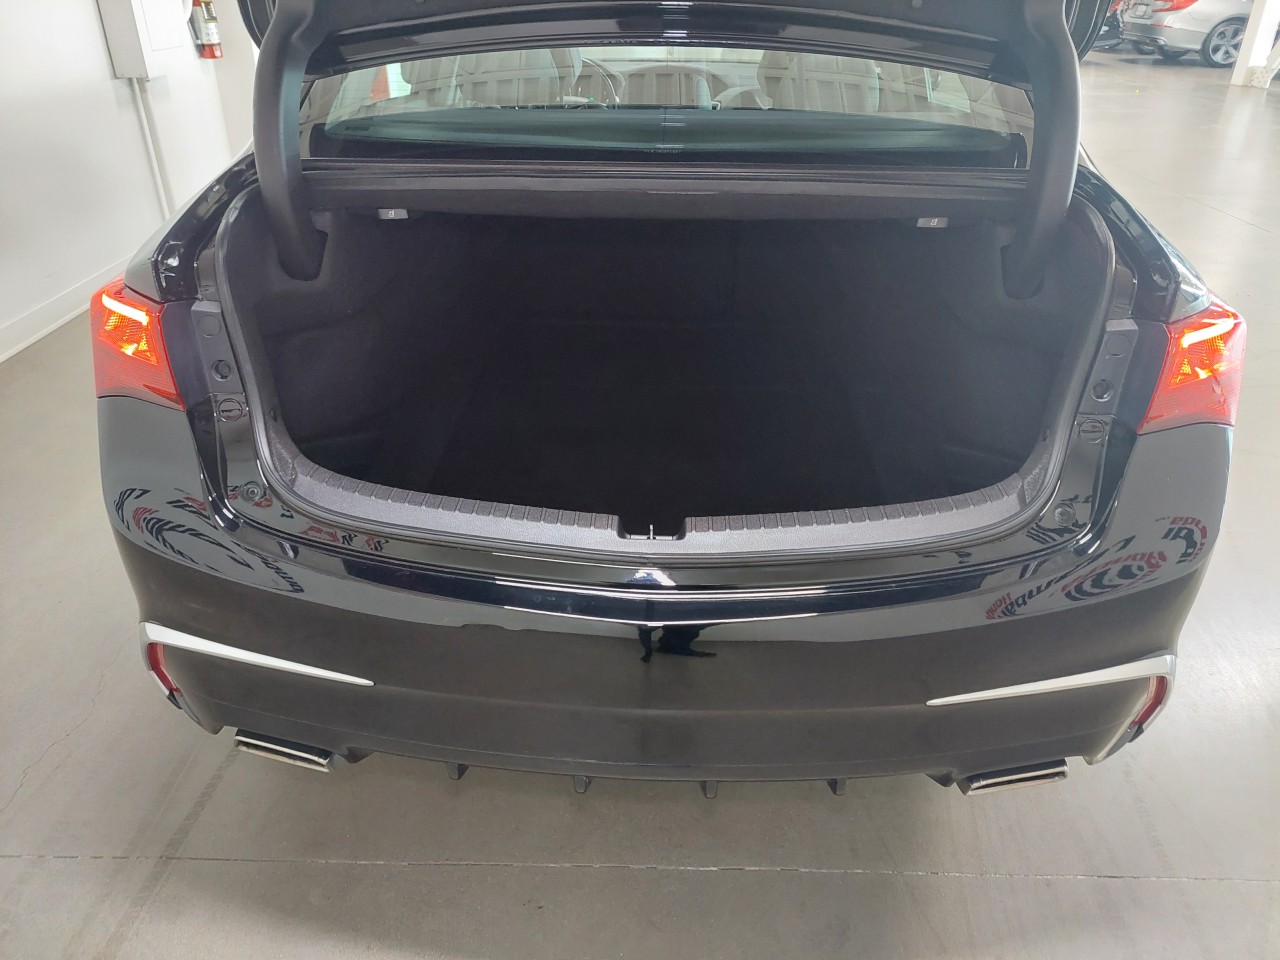 2019 Acura TLX SH-AWD Sedan Main Image